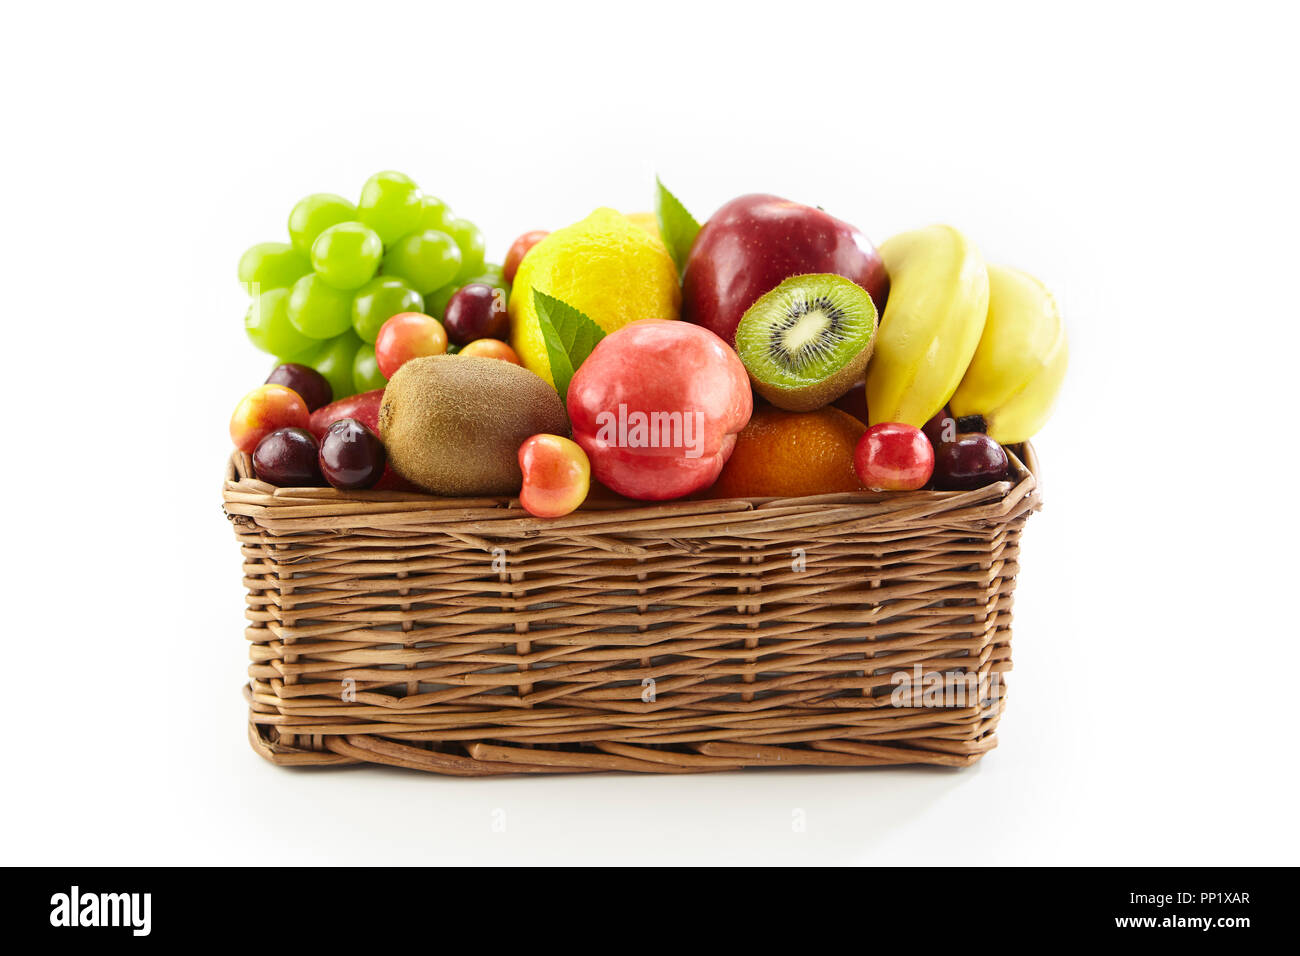 Un assortiment de fruits frais dans un panier carré isolé sur fond blanc, avec l'exemplaire de l'espace. Banque D'Images